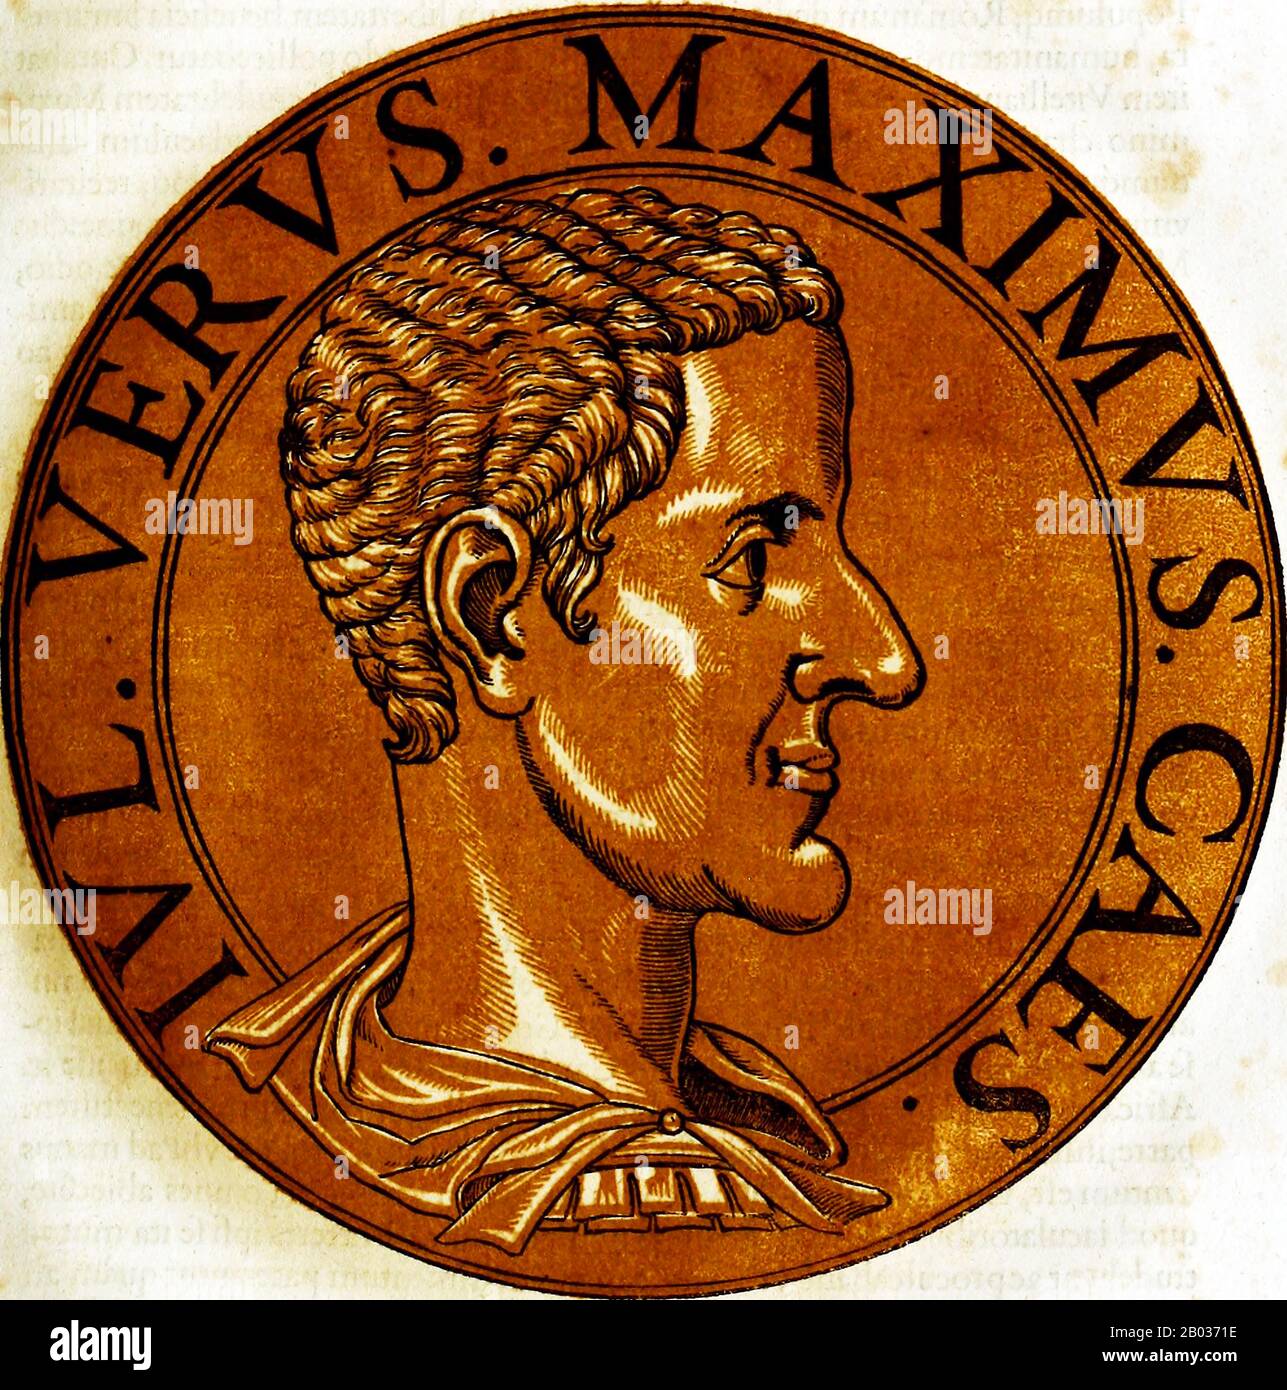 Gaius Julius Verus Maximus (217/220-238), manchmal fälschlicherweise als Gaius Julius Verus Maximinus oder Maximinus der Jüngere bekannt, war der Sohn des thrakorömischen Kaiser Maximinus Thrax. Maximus wurde 236 zum Cäsar ernannt, hatte aber nur wenig wirkliche Macht, bis er 238 von der Prätorianergarde während der Belagerung von Aquileia an der Seite seines Vaters ermordet wurde. Stockfoto